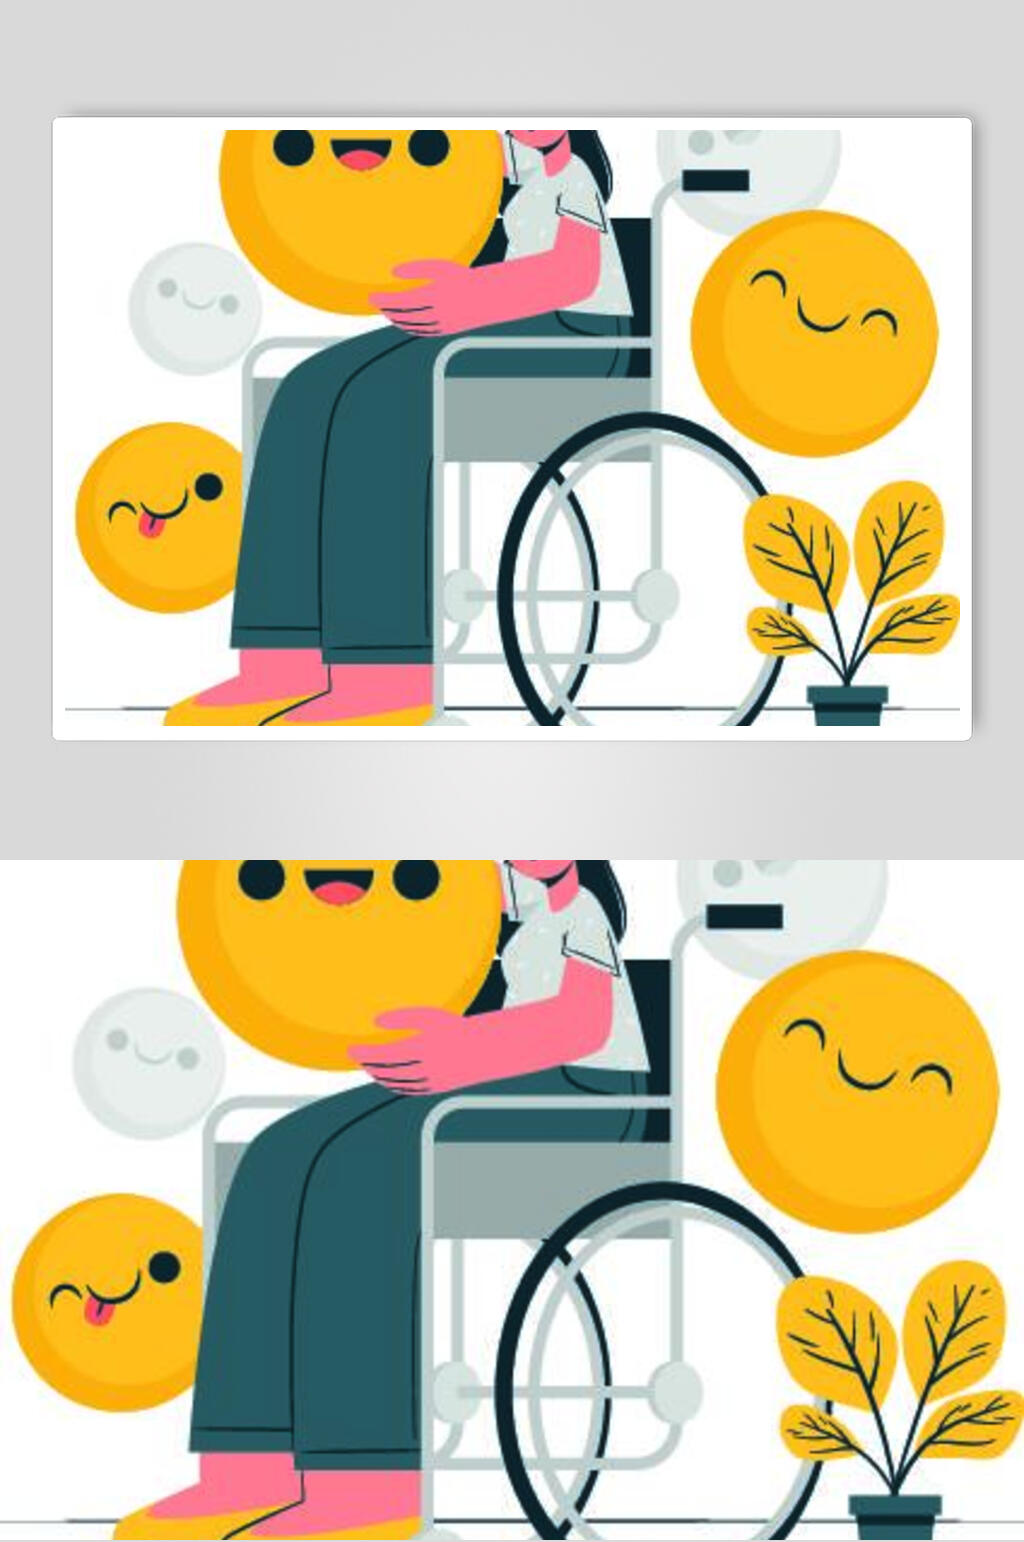 轮椅图片动漫女生图片